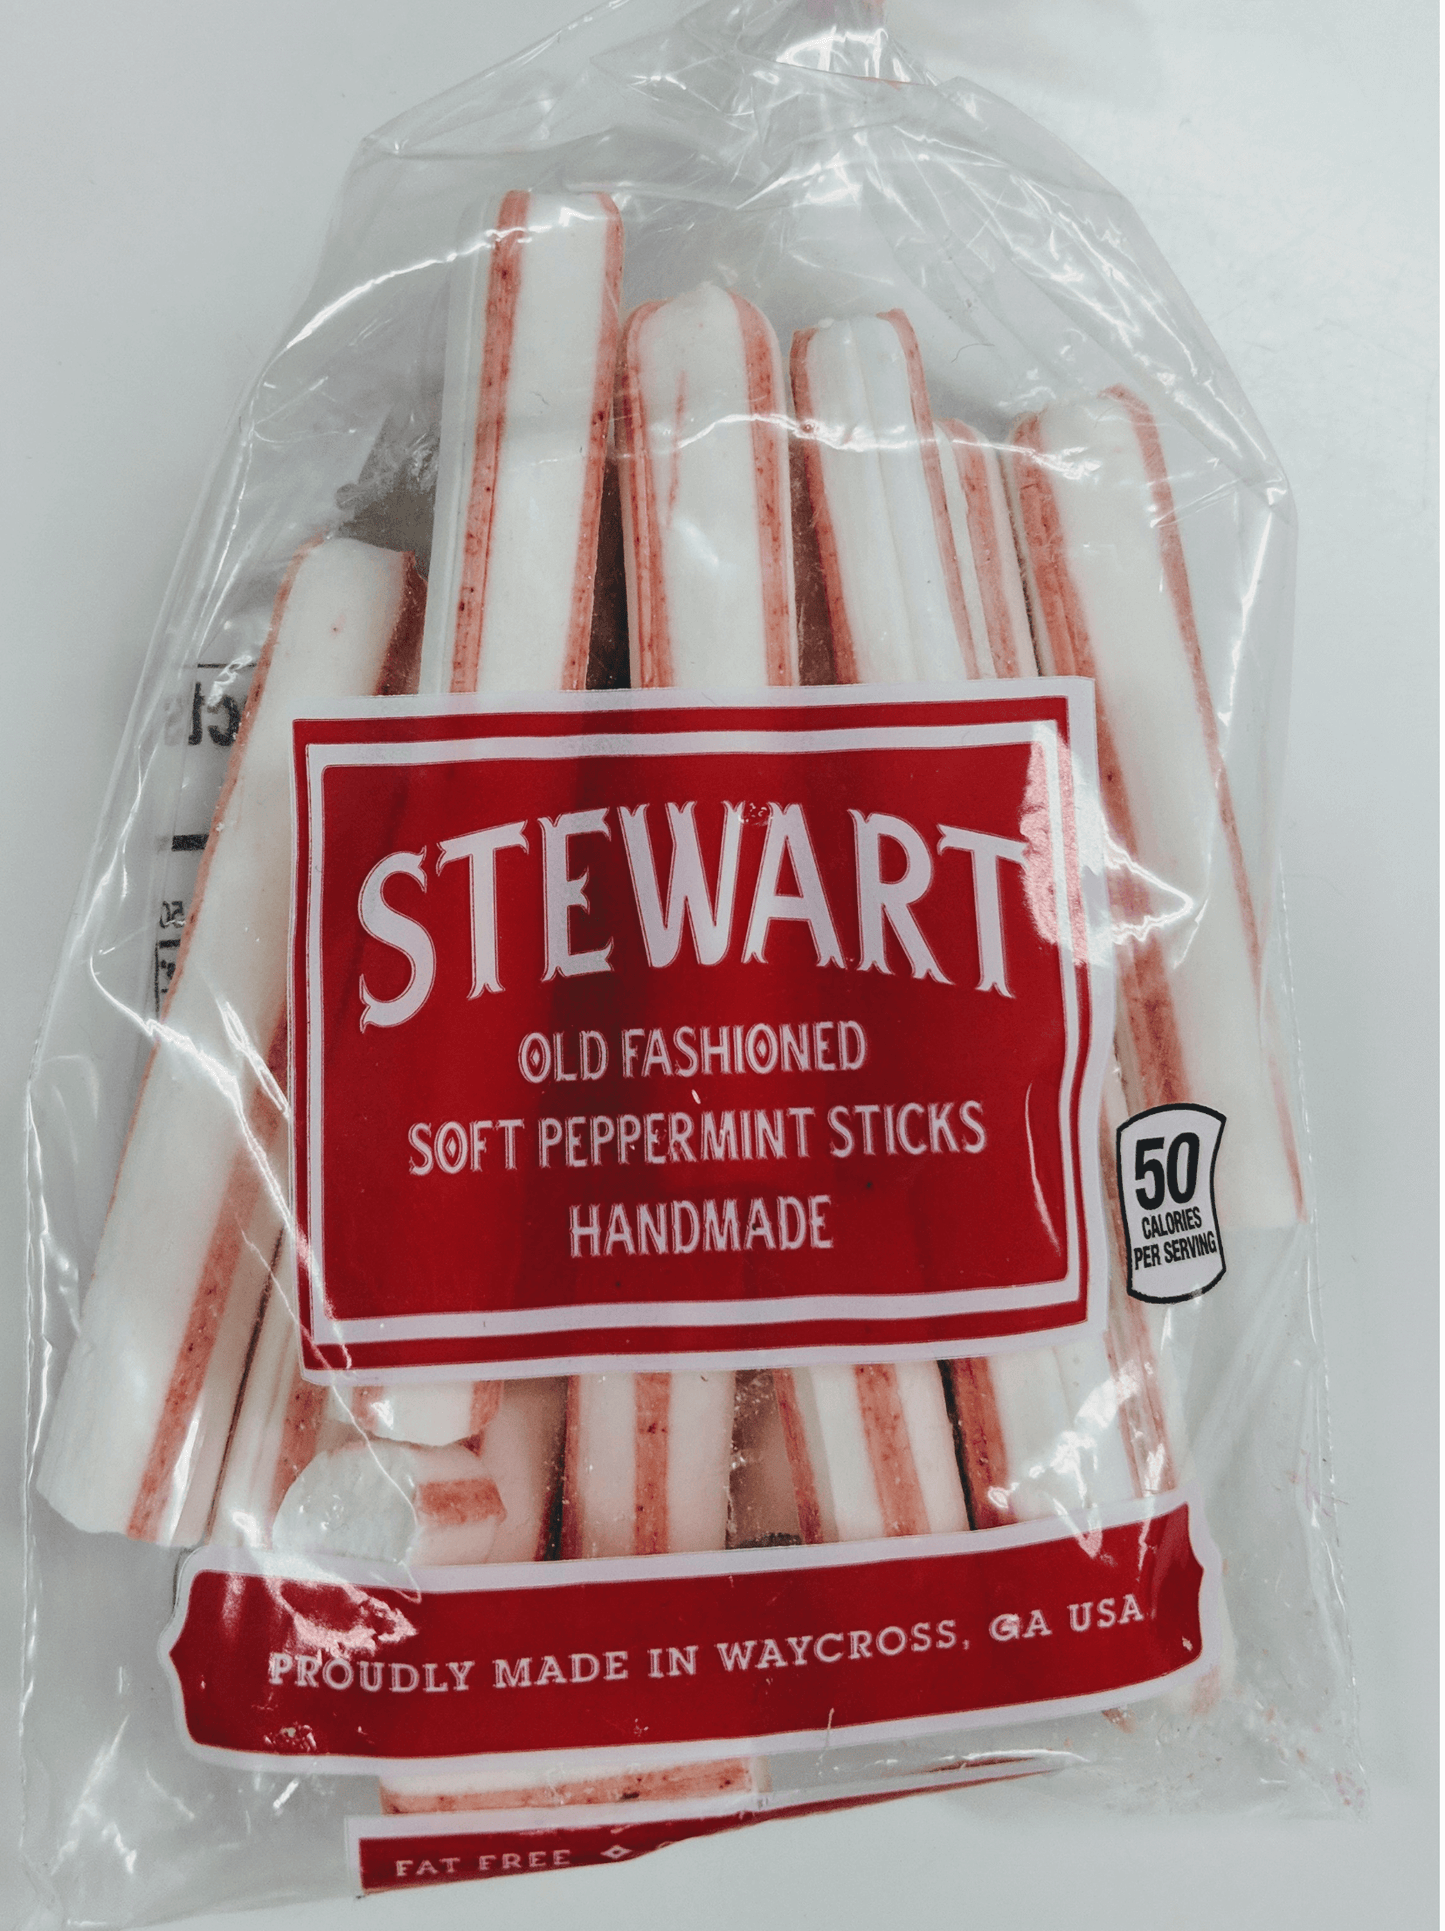 Stewart’s Soft Peppermint Sticks